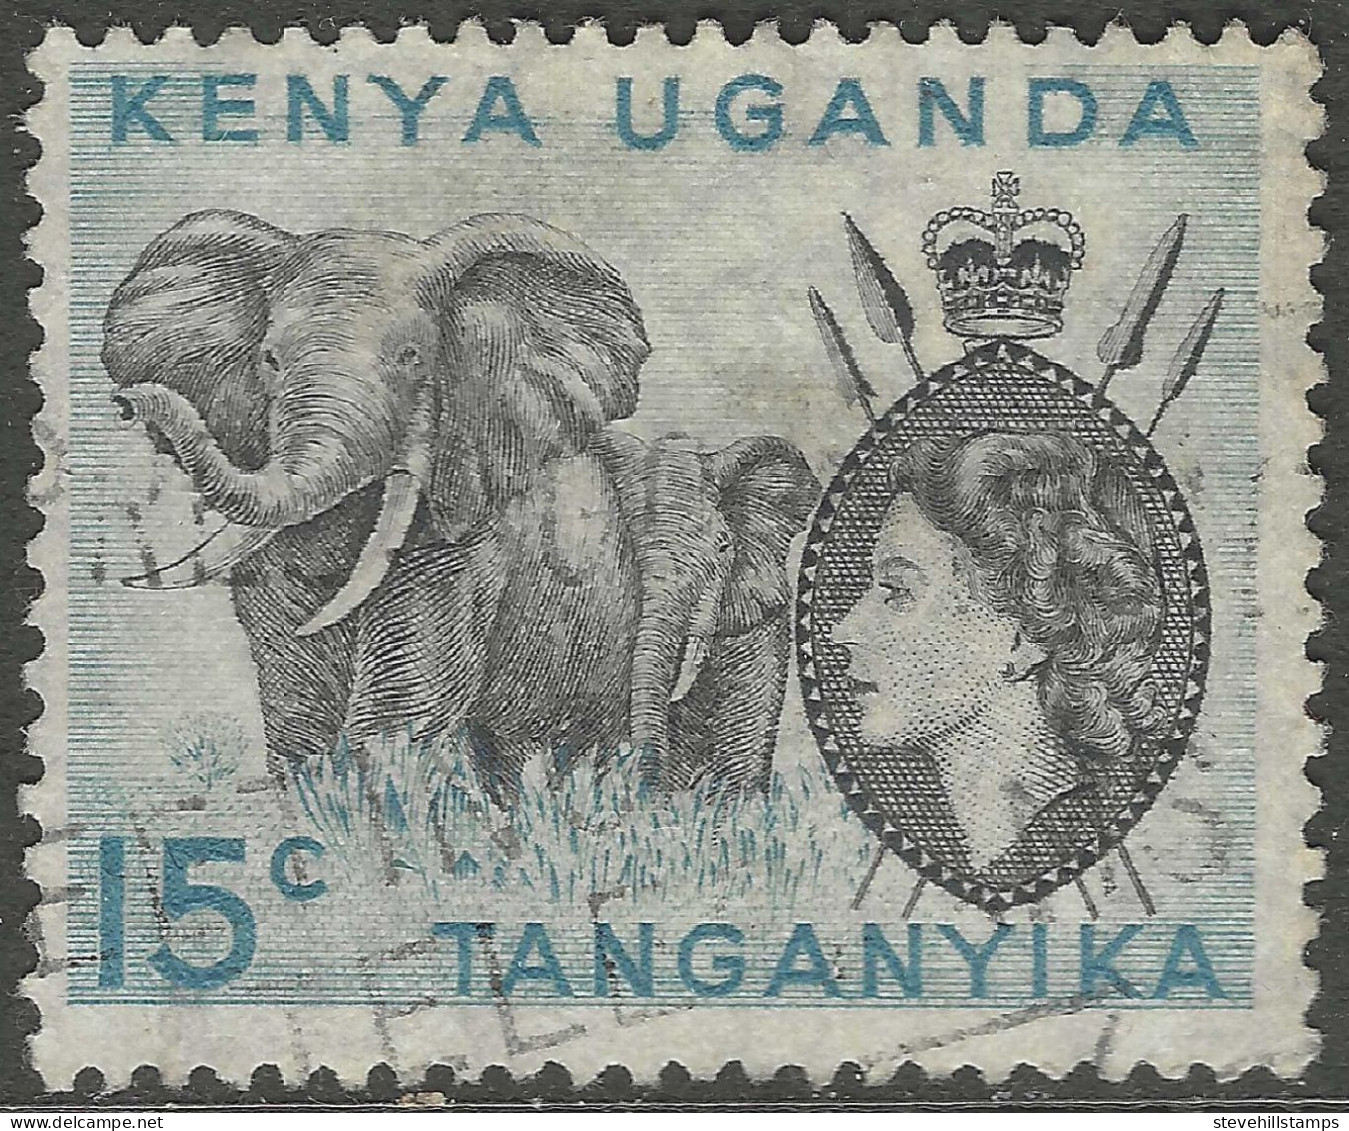 Kenya, Uganda & Tanganyika. 1954-59 QEII. 15c Without Stop Used. SG 169 - Kenya, Uganda & Tanganyika